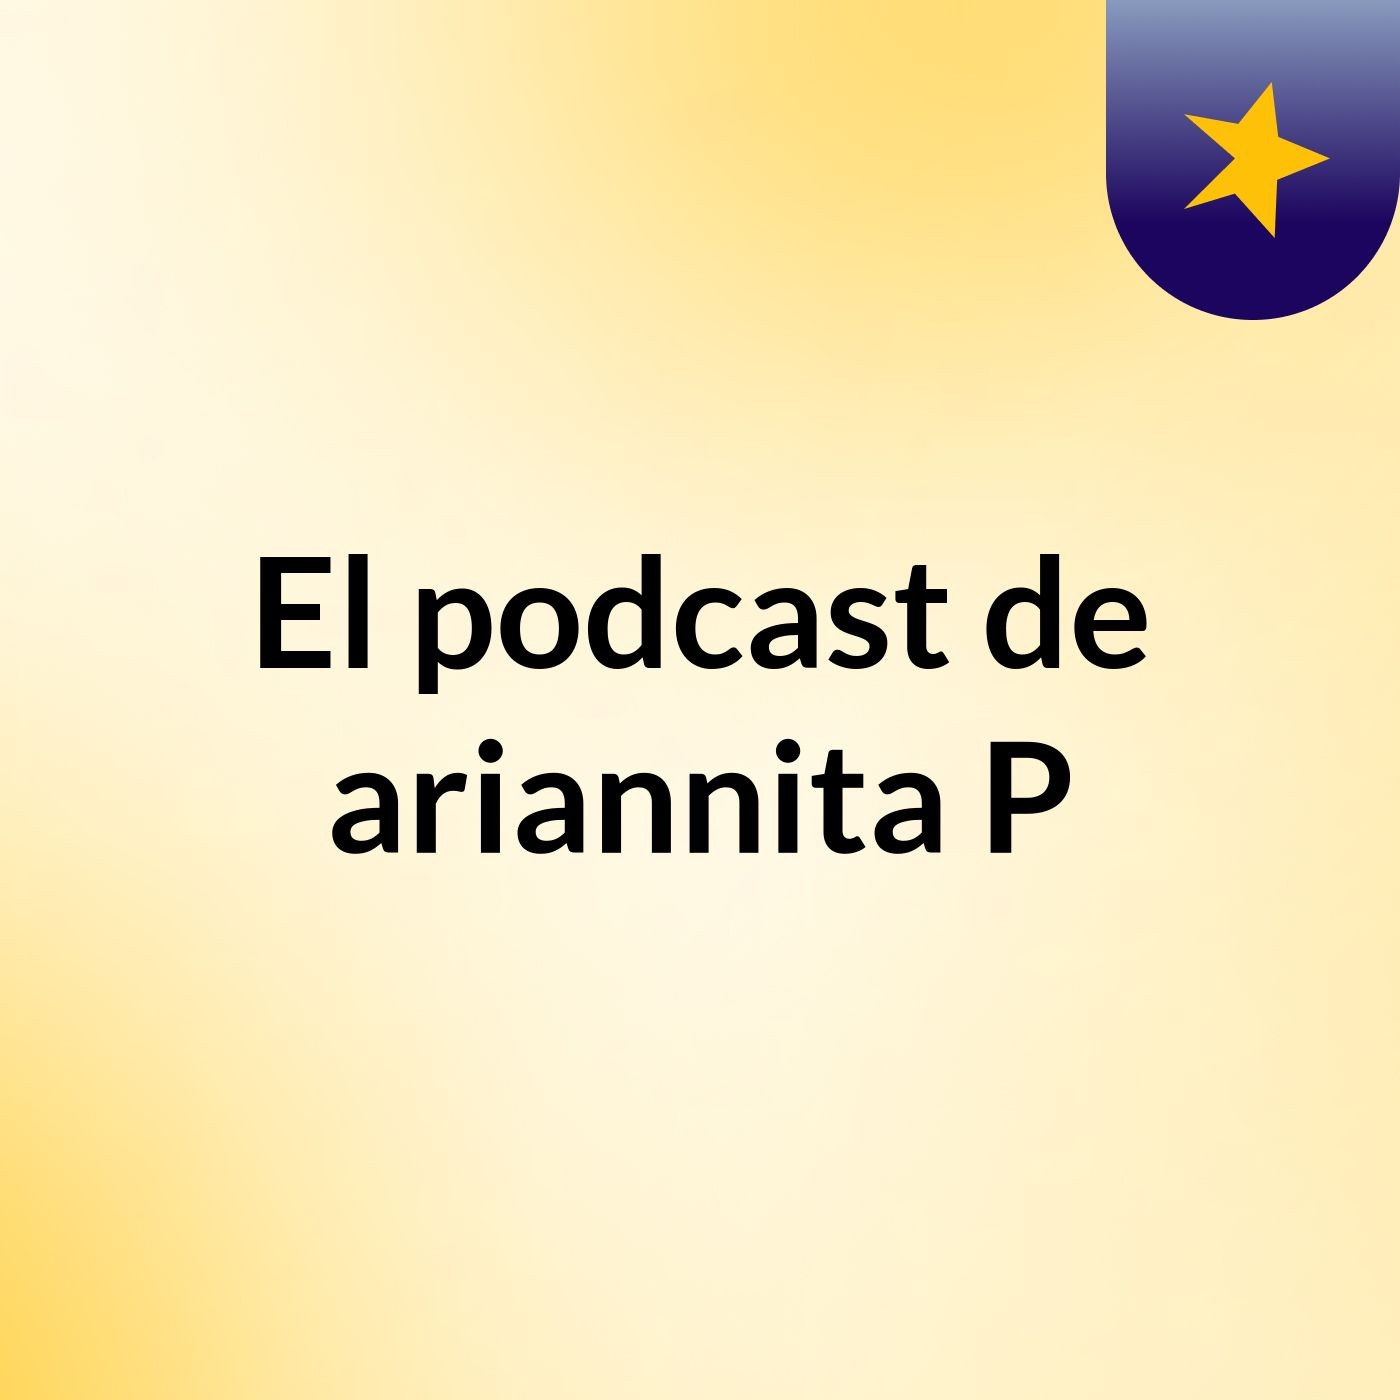 El podcast de ariannita P'